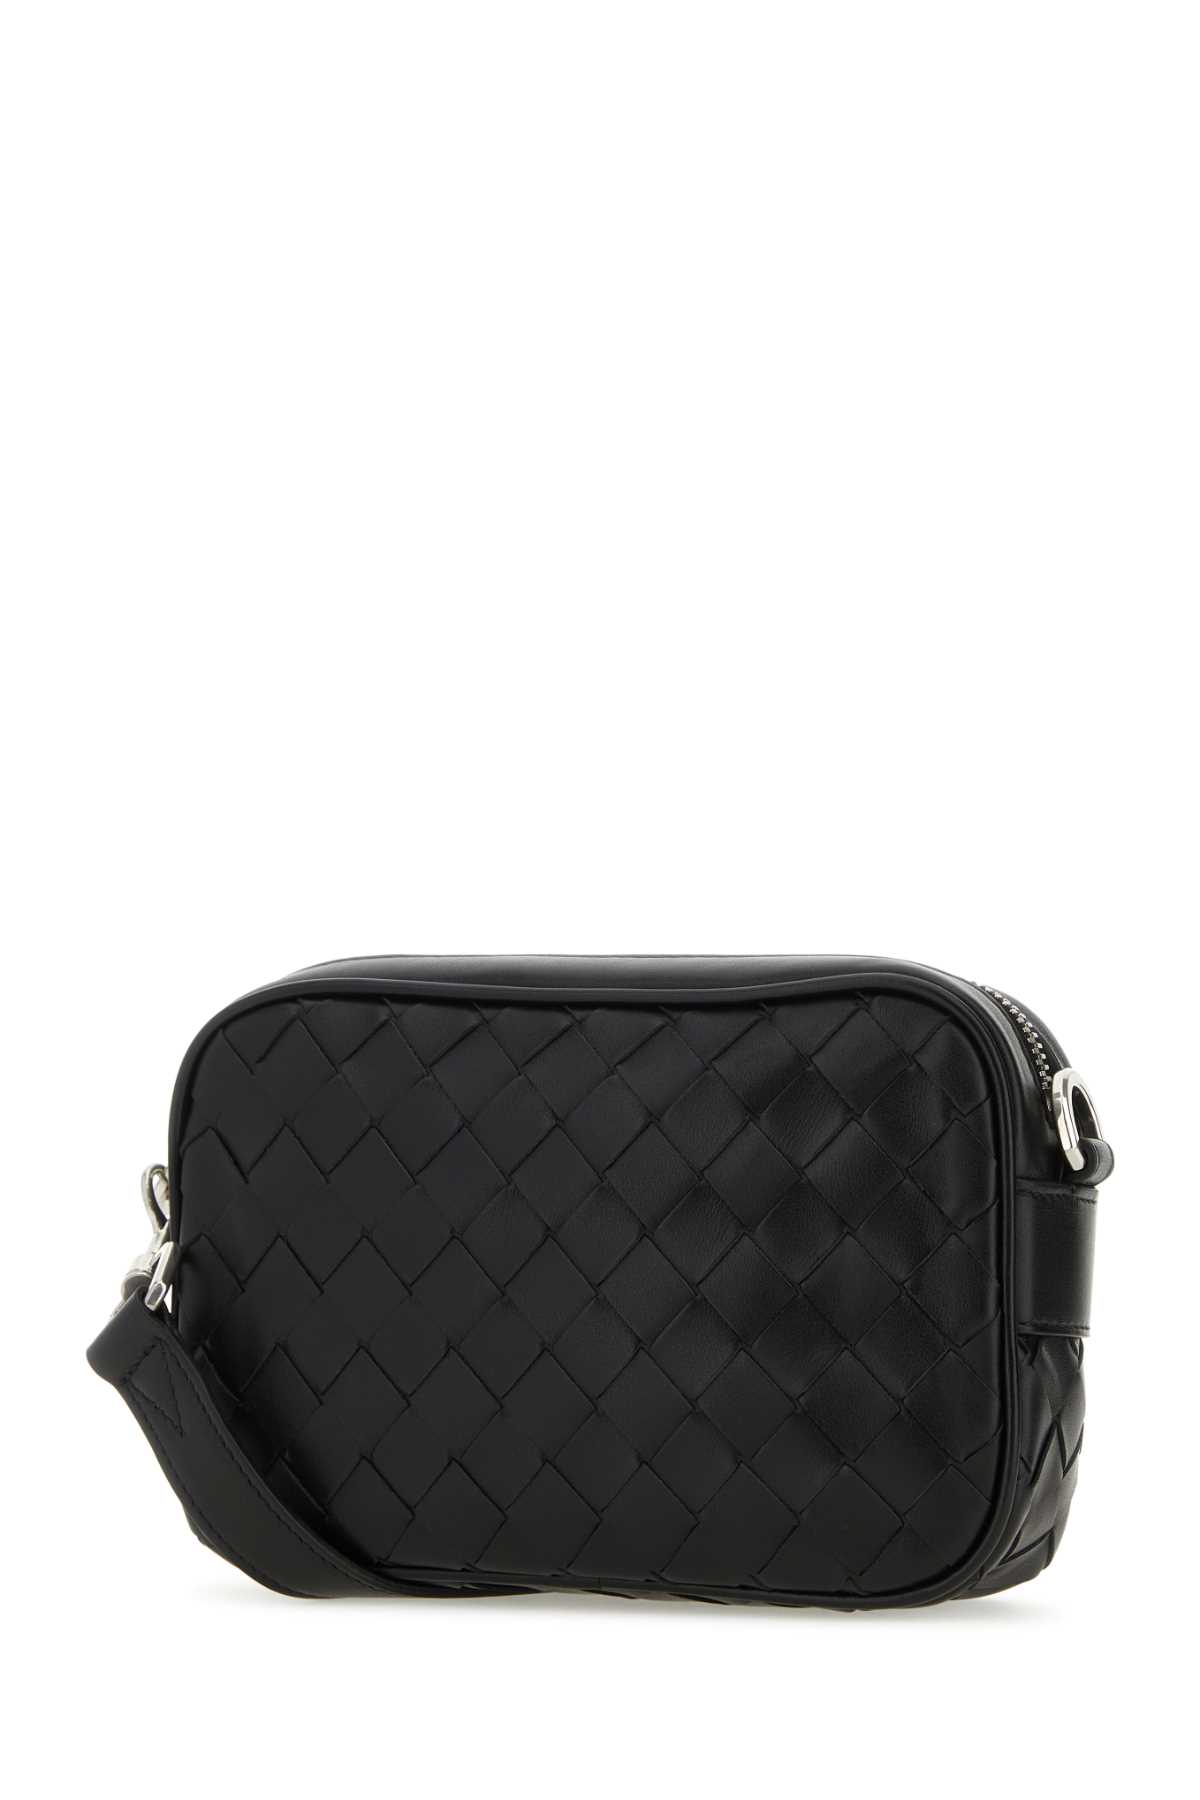 Shop Bottega Veneta Black Leather Intrecciato Mini Crossbody Bag In Blk